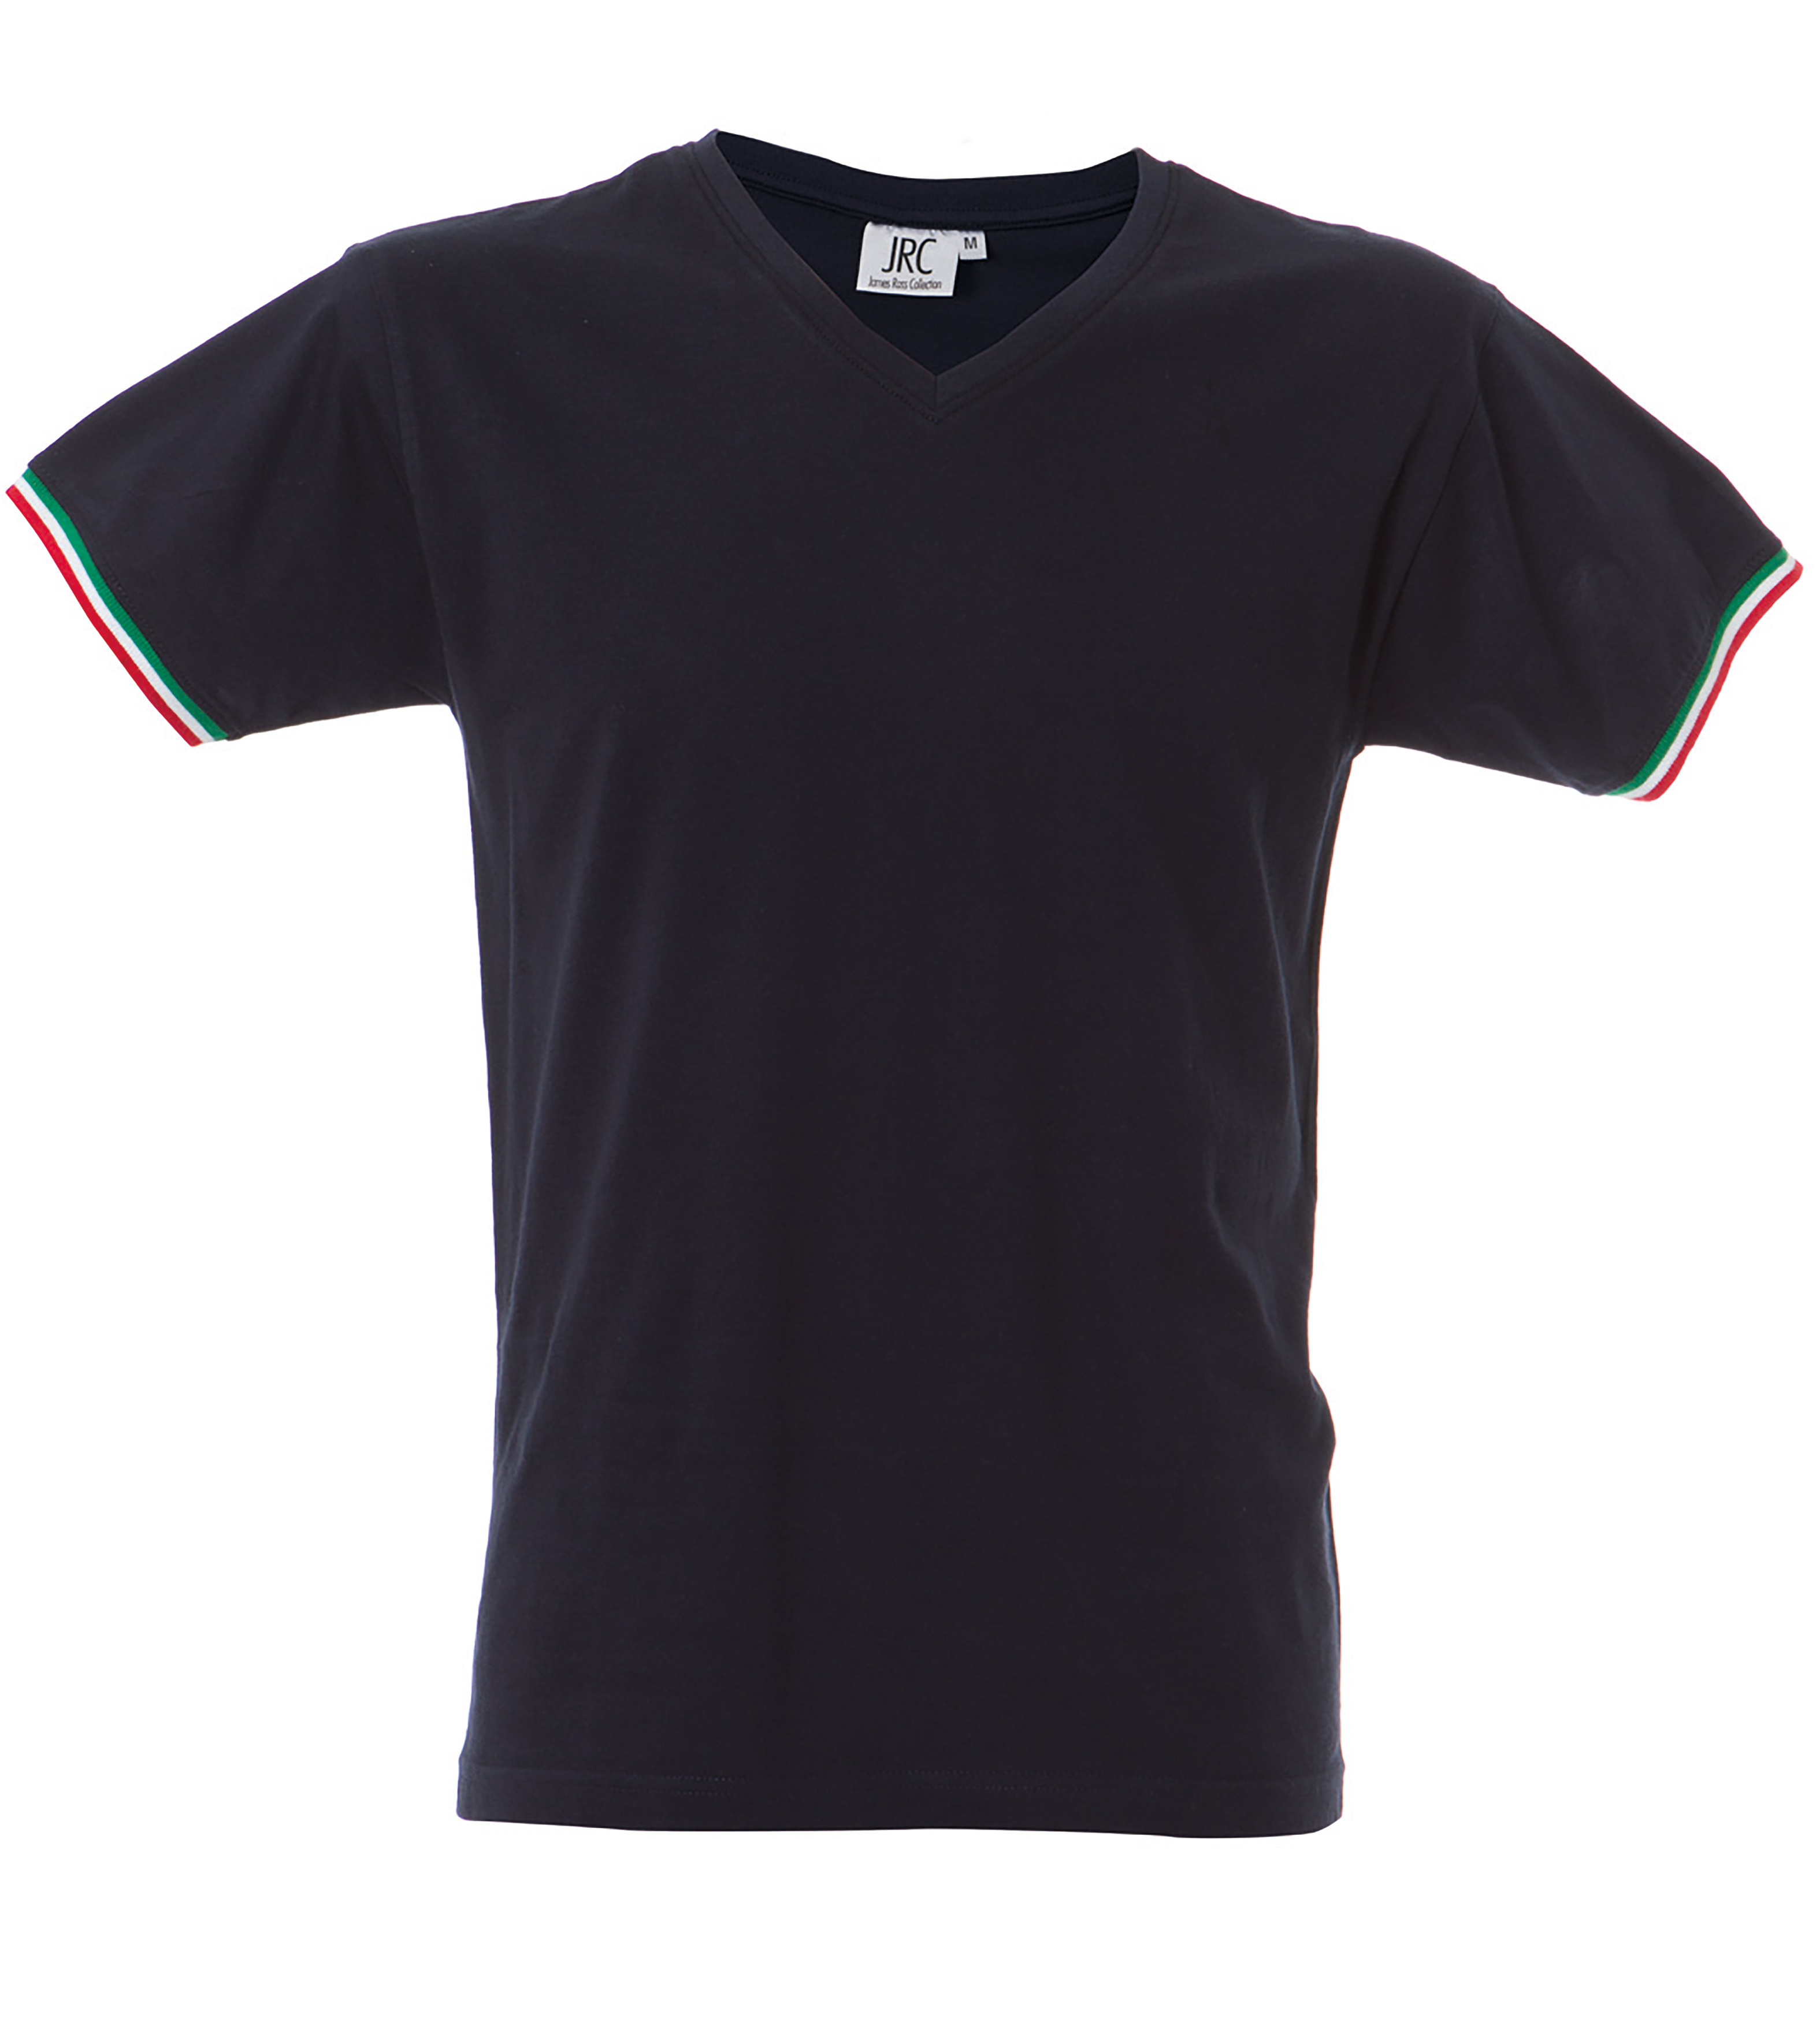 Camiseta New Milano